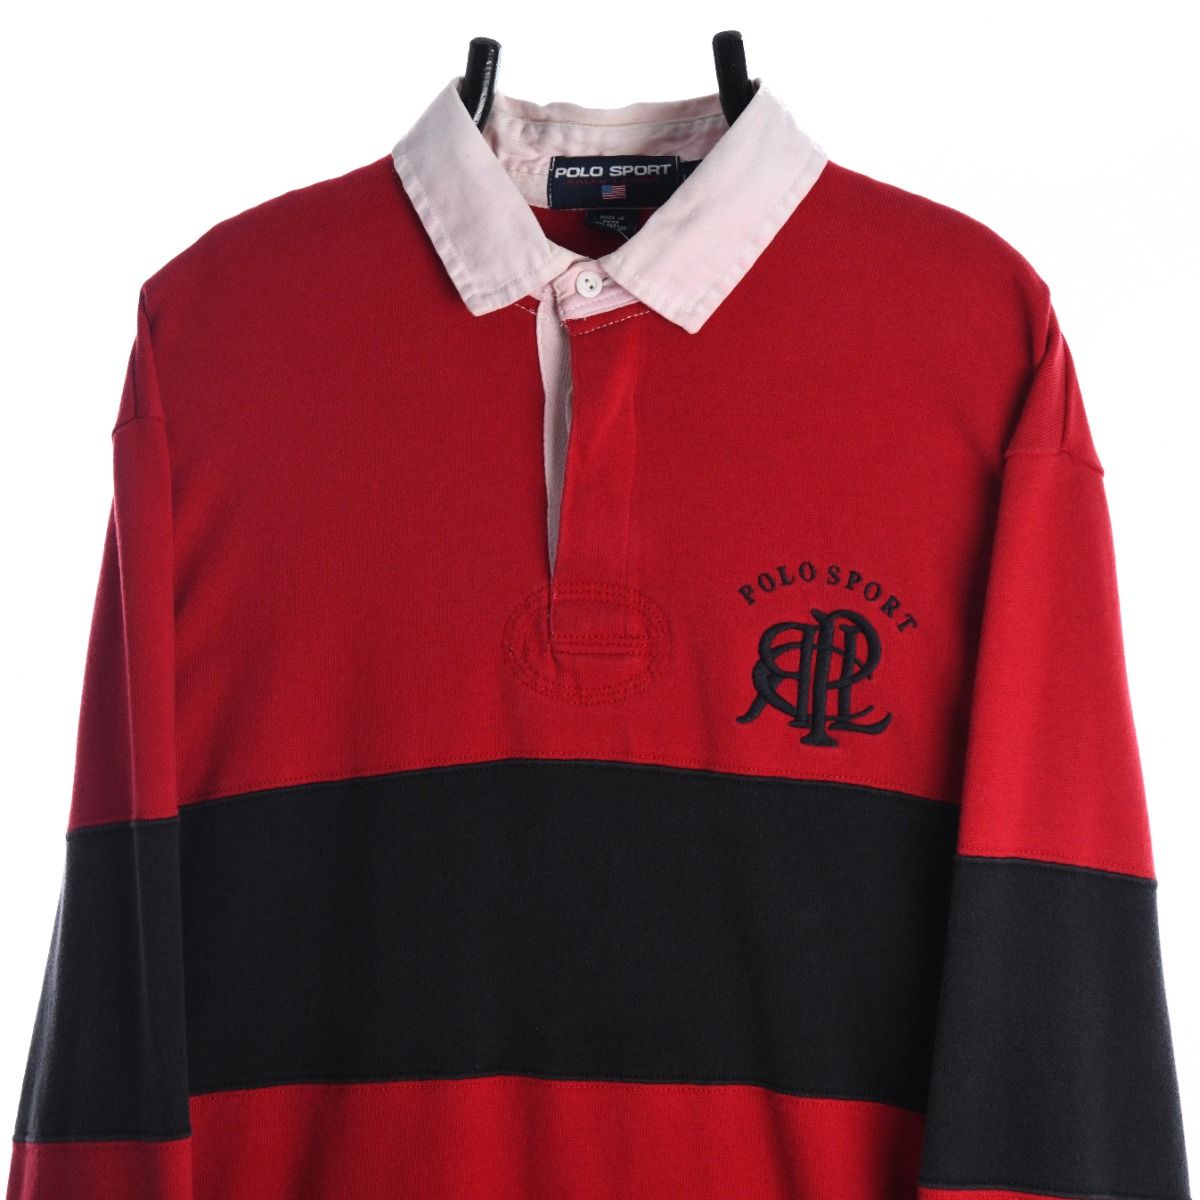 Ralph Lauren Polo Sport 1990s Rugby Shirt